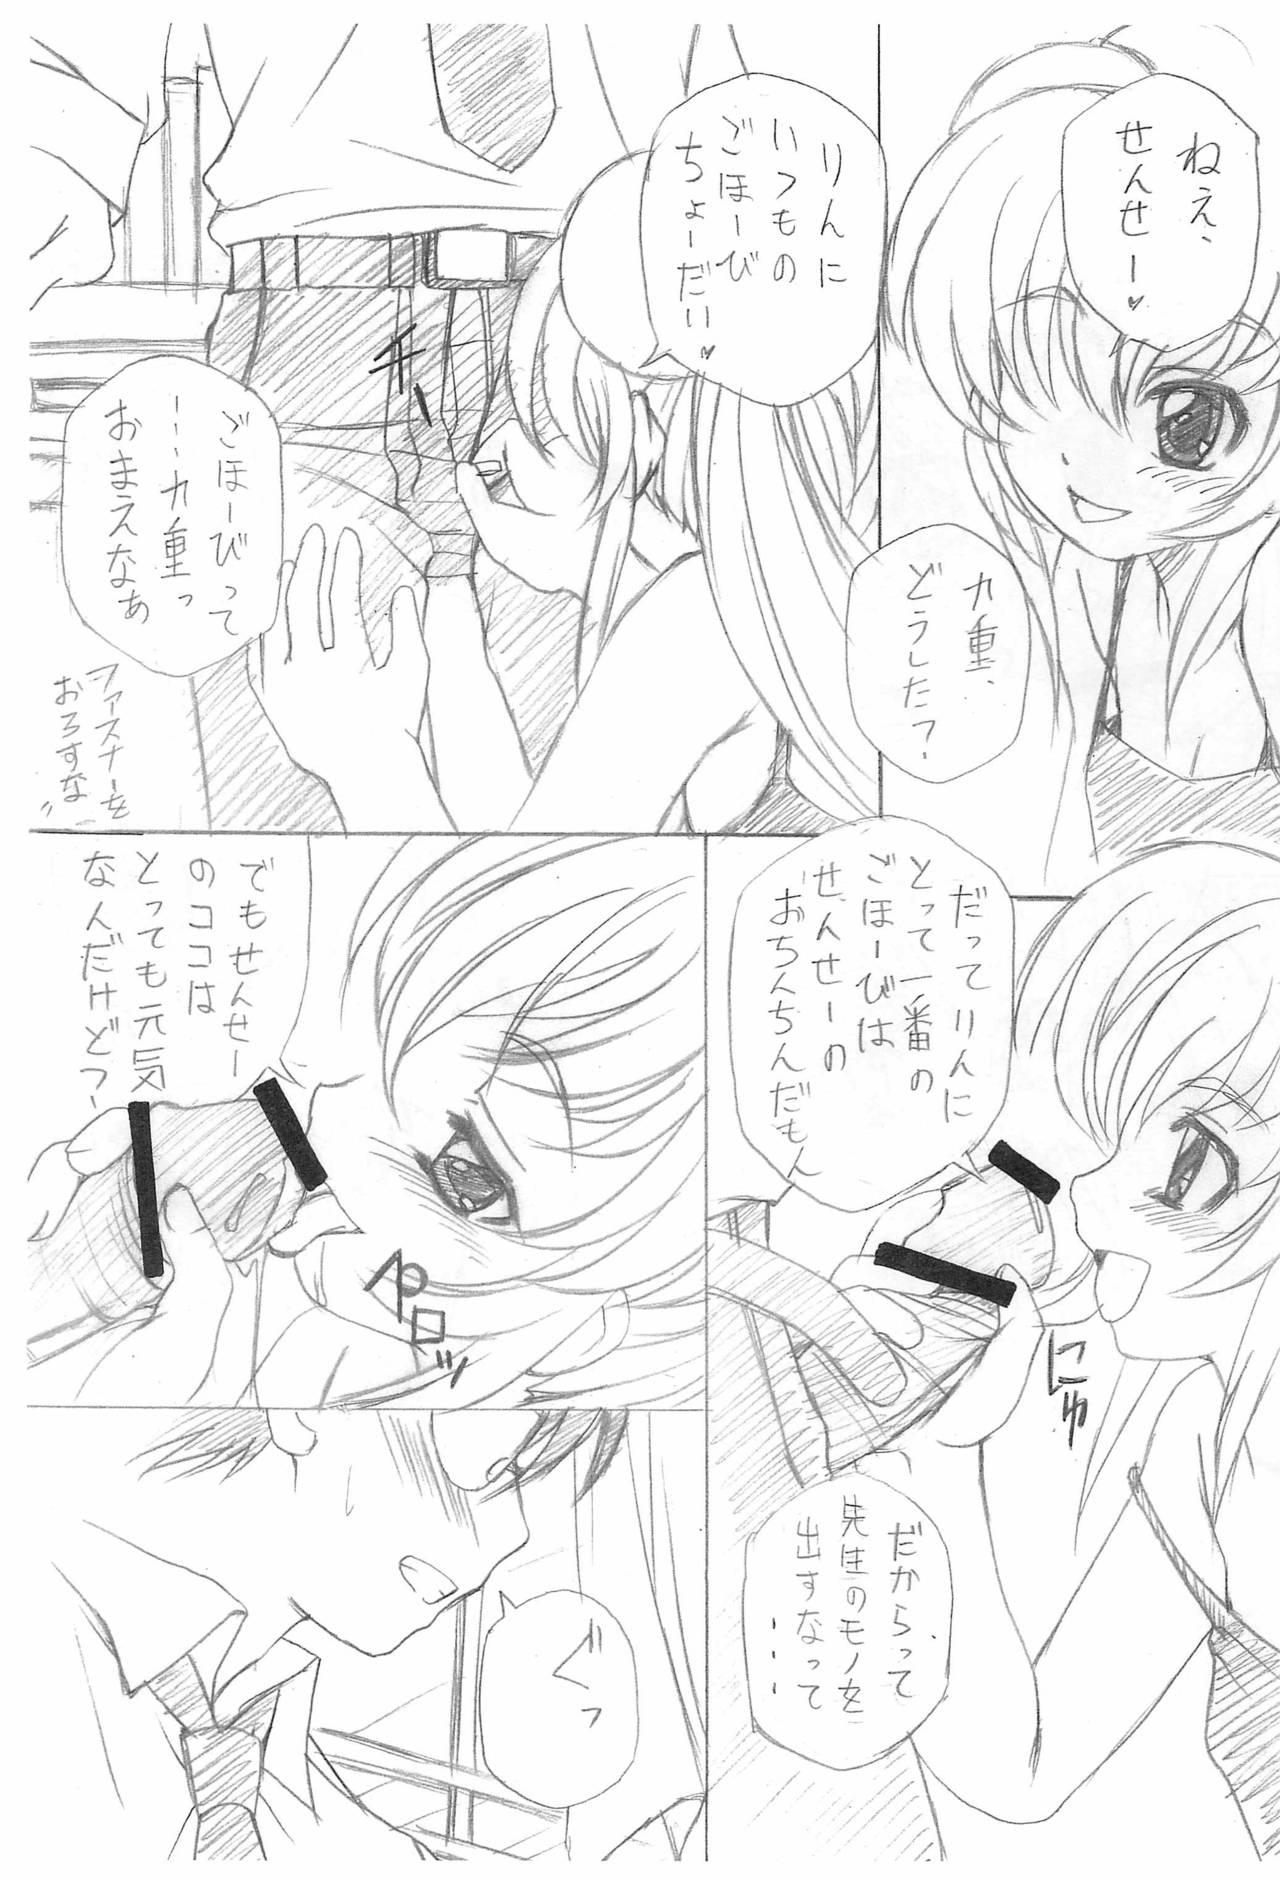 Eating Pussy Kojika no Kokan - Kodomo no jikan Fudendo - Page 3